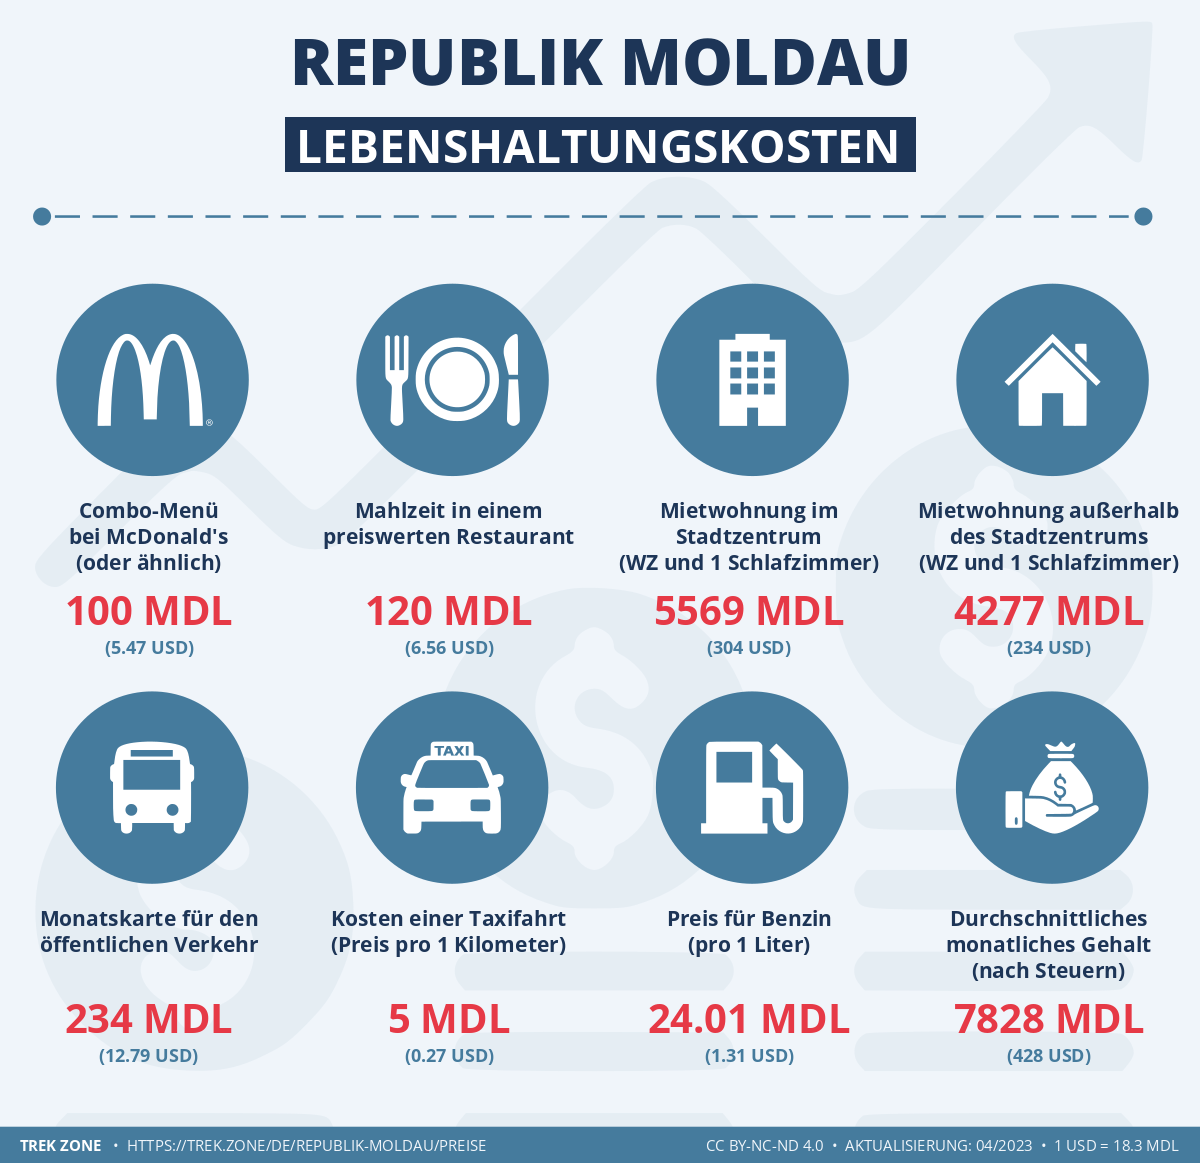 preise und lebenskosten republik moldau